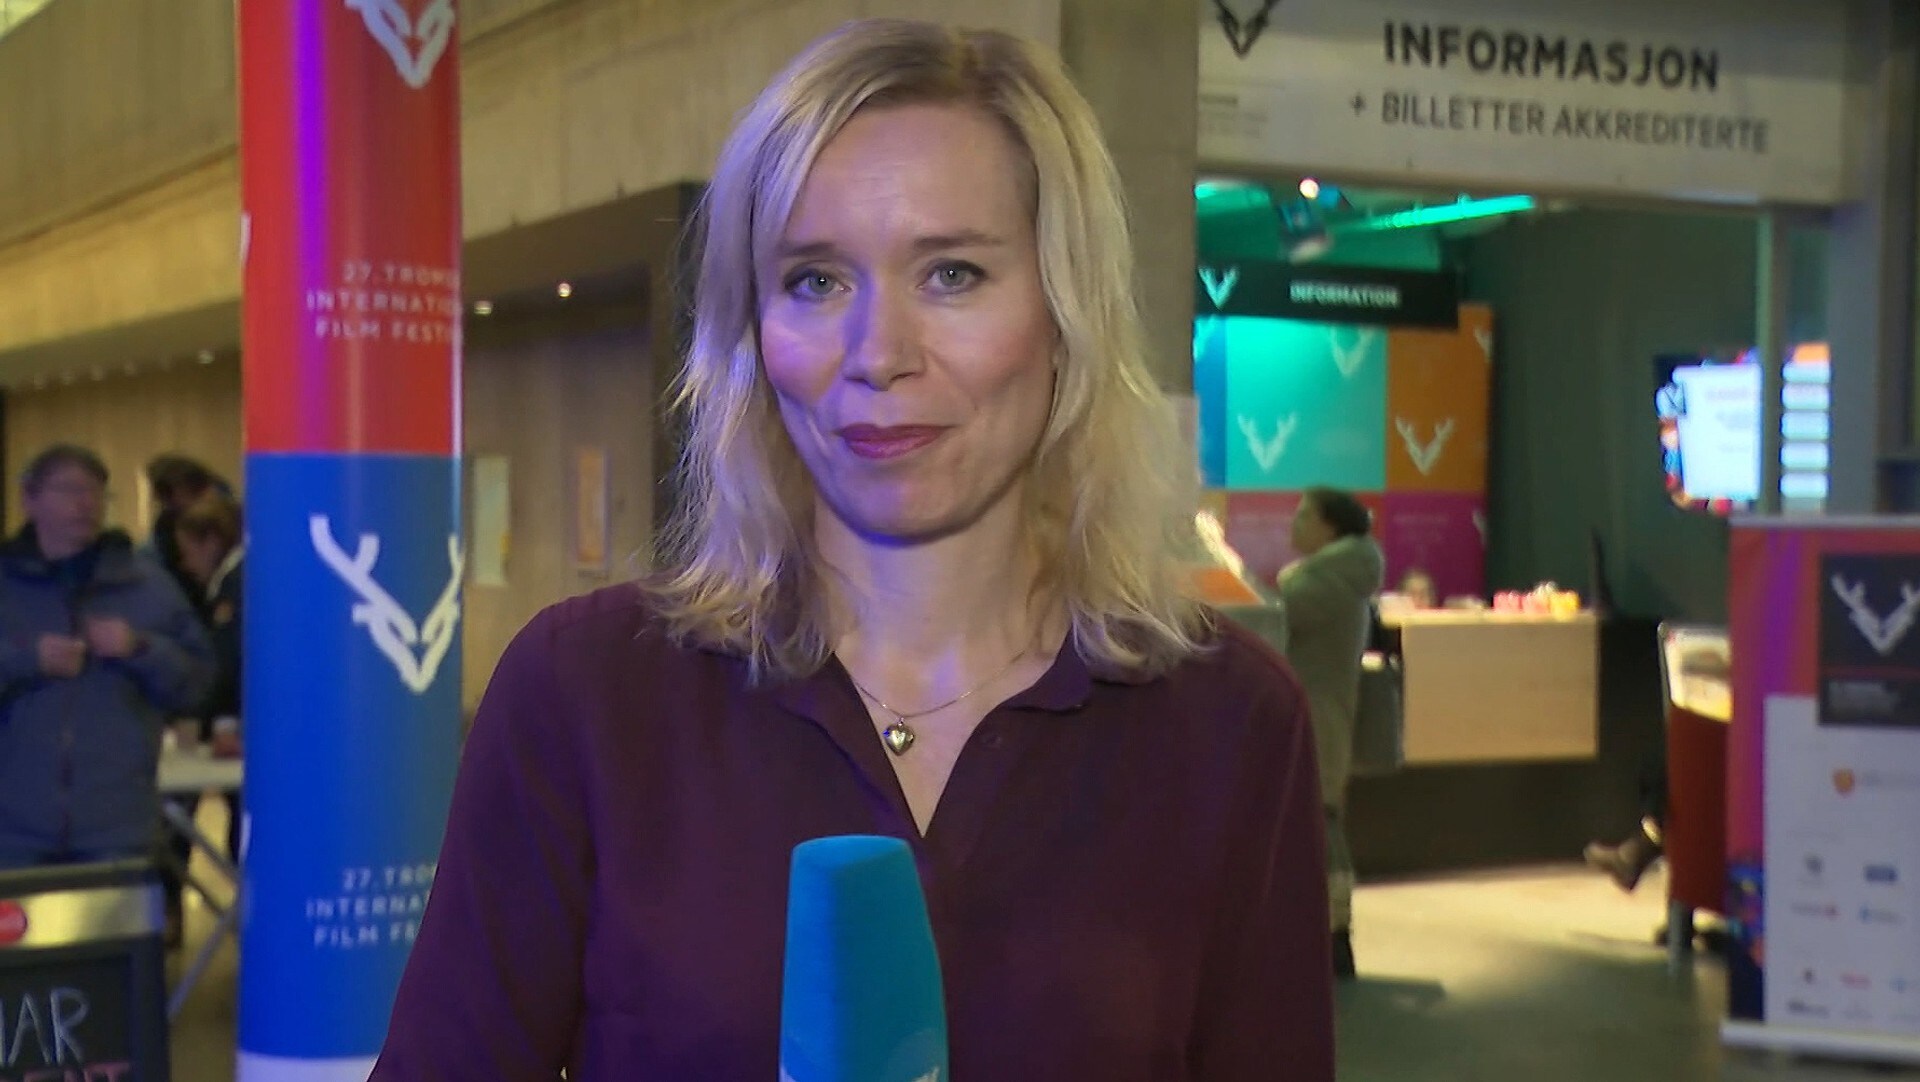 Gikk du glipp av NRK-sendingene fra TIFF? - NRK Troms ...